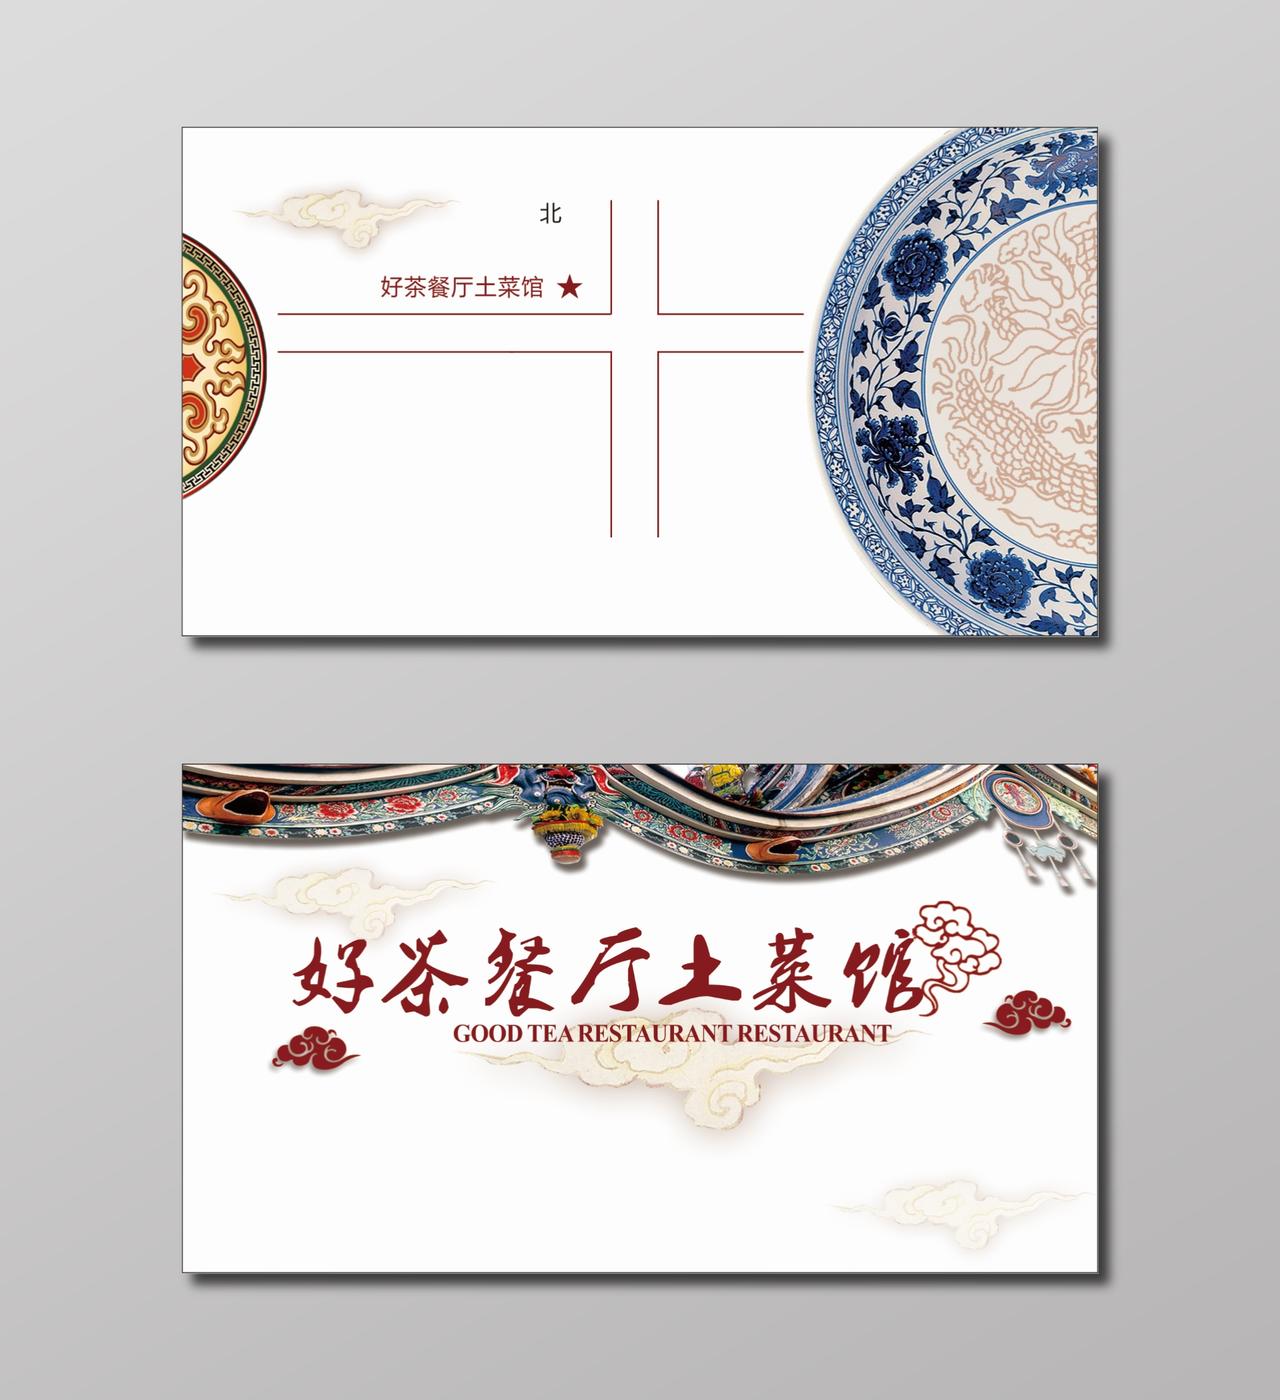 白色简约中国风土菜馆餐厅名片